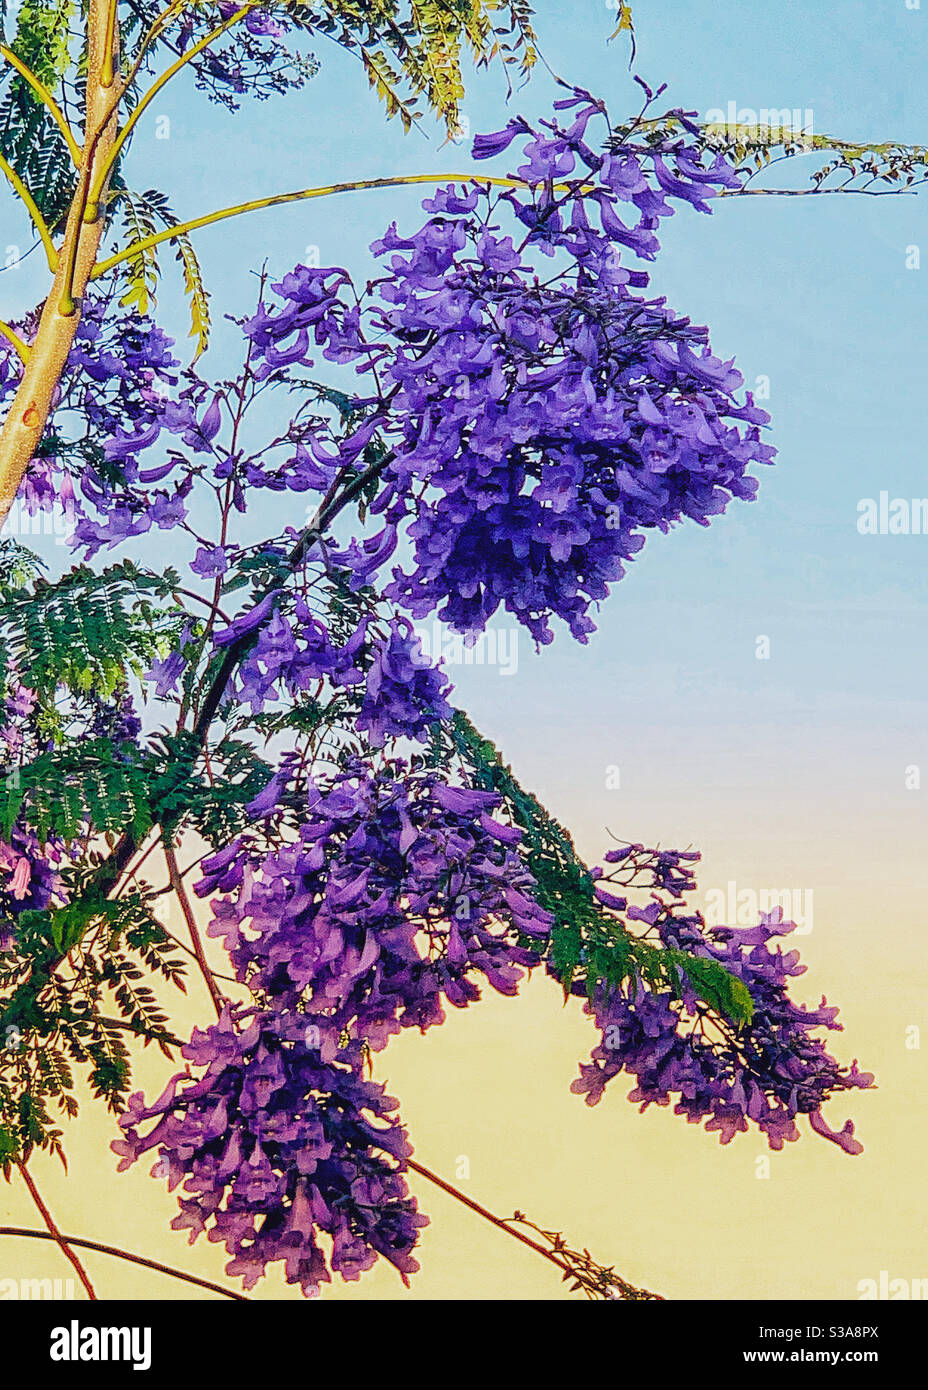 Die glorreichen purpurnen Blüten eines Jacaranda Baumes Stockfoto